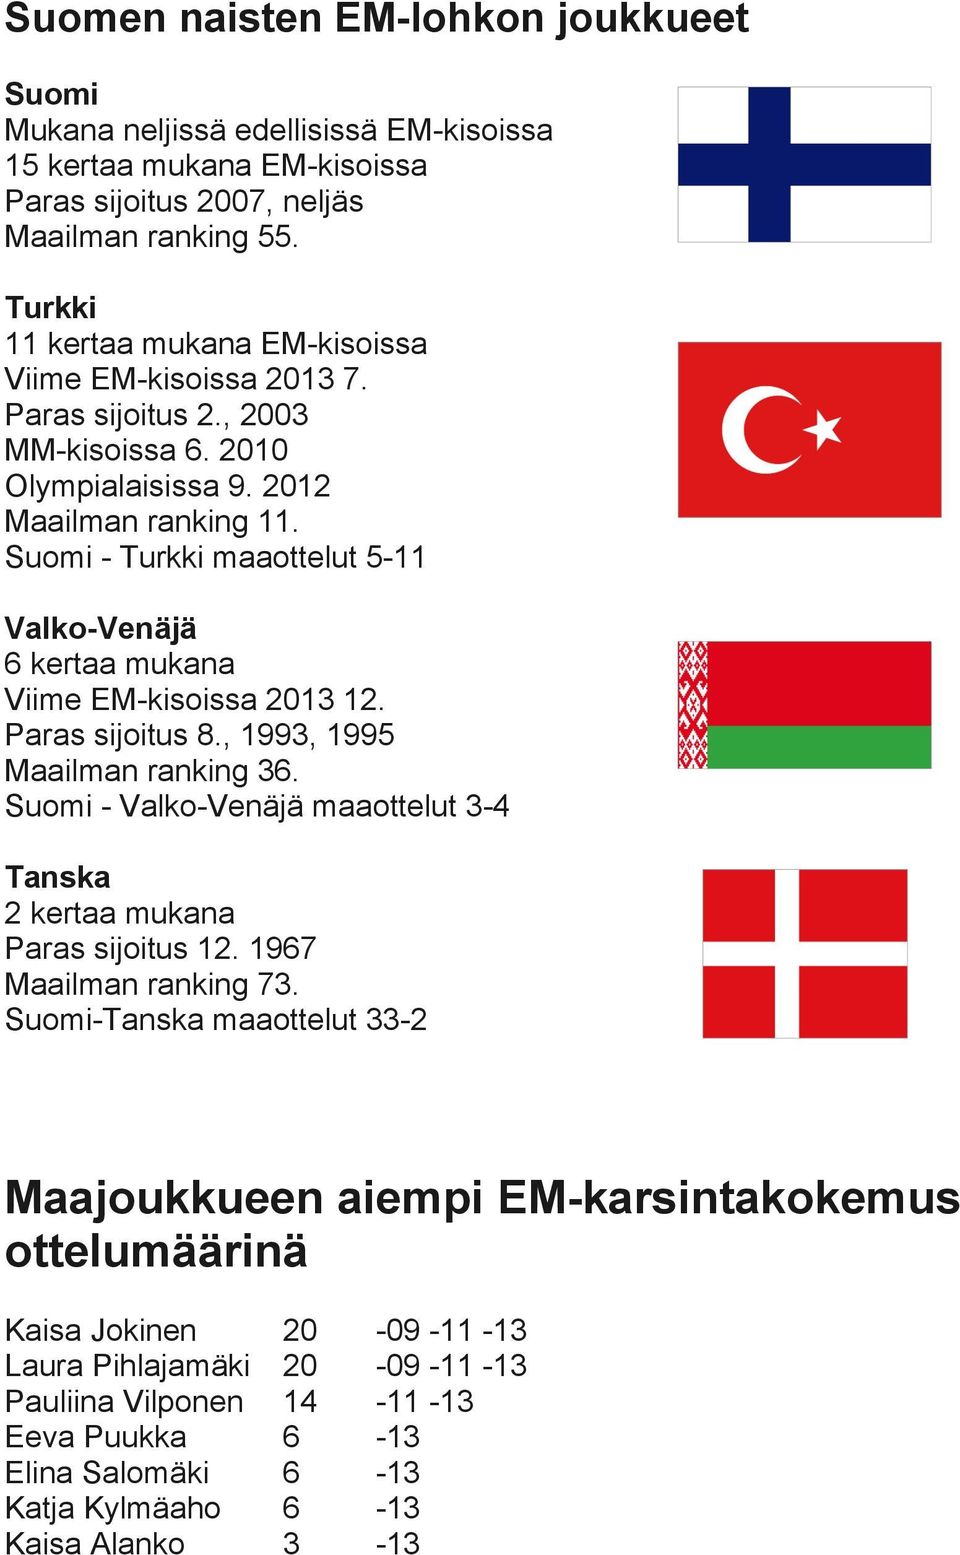 Suomi - Turkki maaottelut 5-11 Valko-Venäjä 6 kertaa mukana Viime EM-kisoissa 2013 12. Paras sijoitus 8., 1993, 1995 Maailman ranking 36.